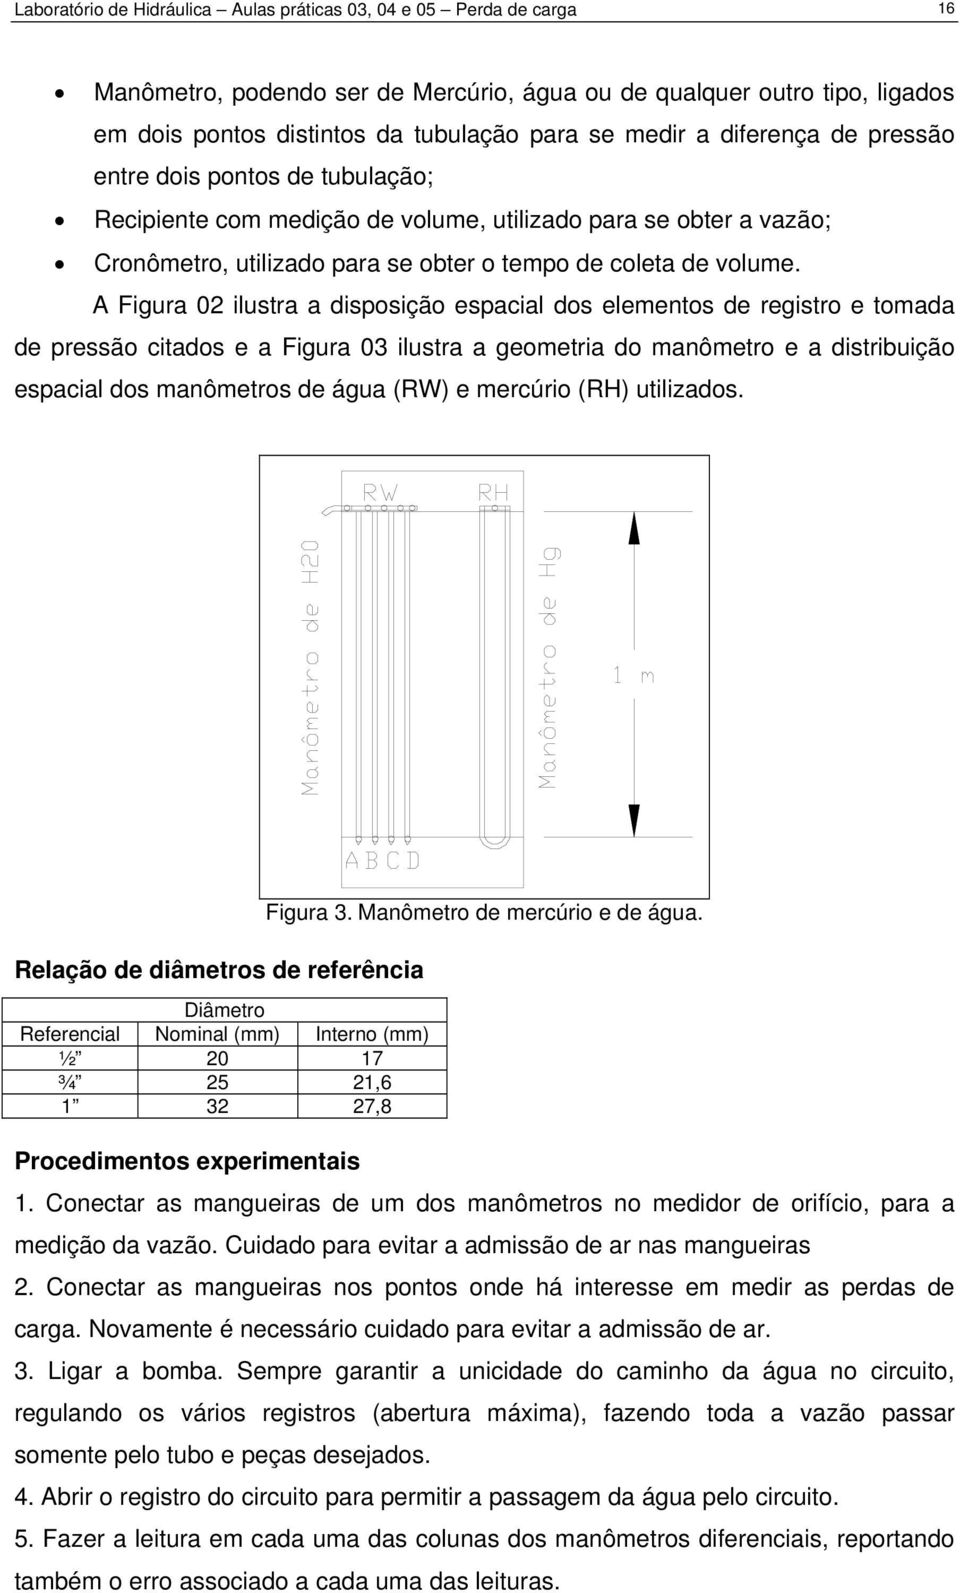 A Figura 0 ilustra a disposição espacial dos elementos de registro e tomada de pressão citados e a Figura 03 ilustra a geometria do manômetro e a distribuição espacial dos manômetros de água (RW) e